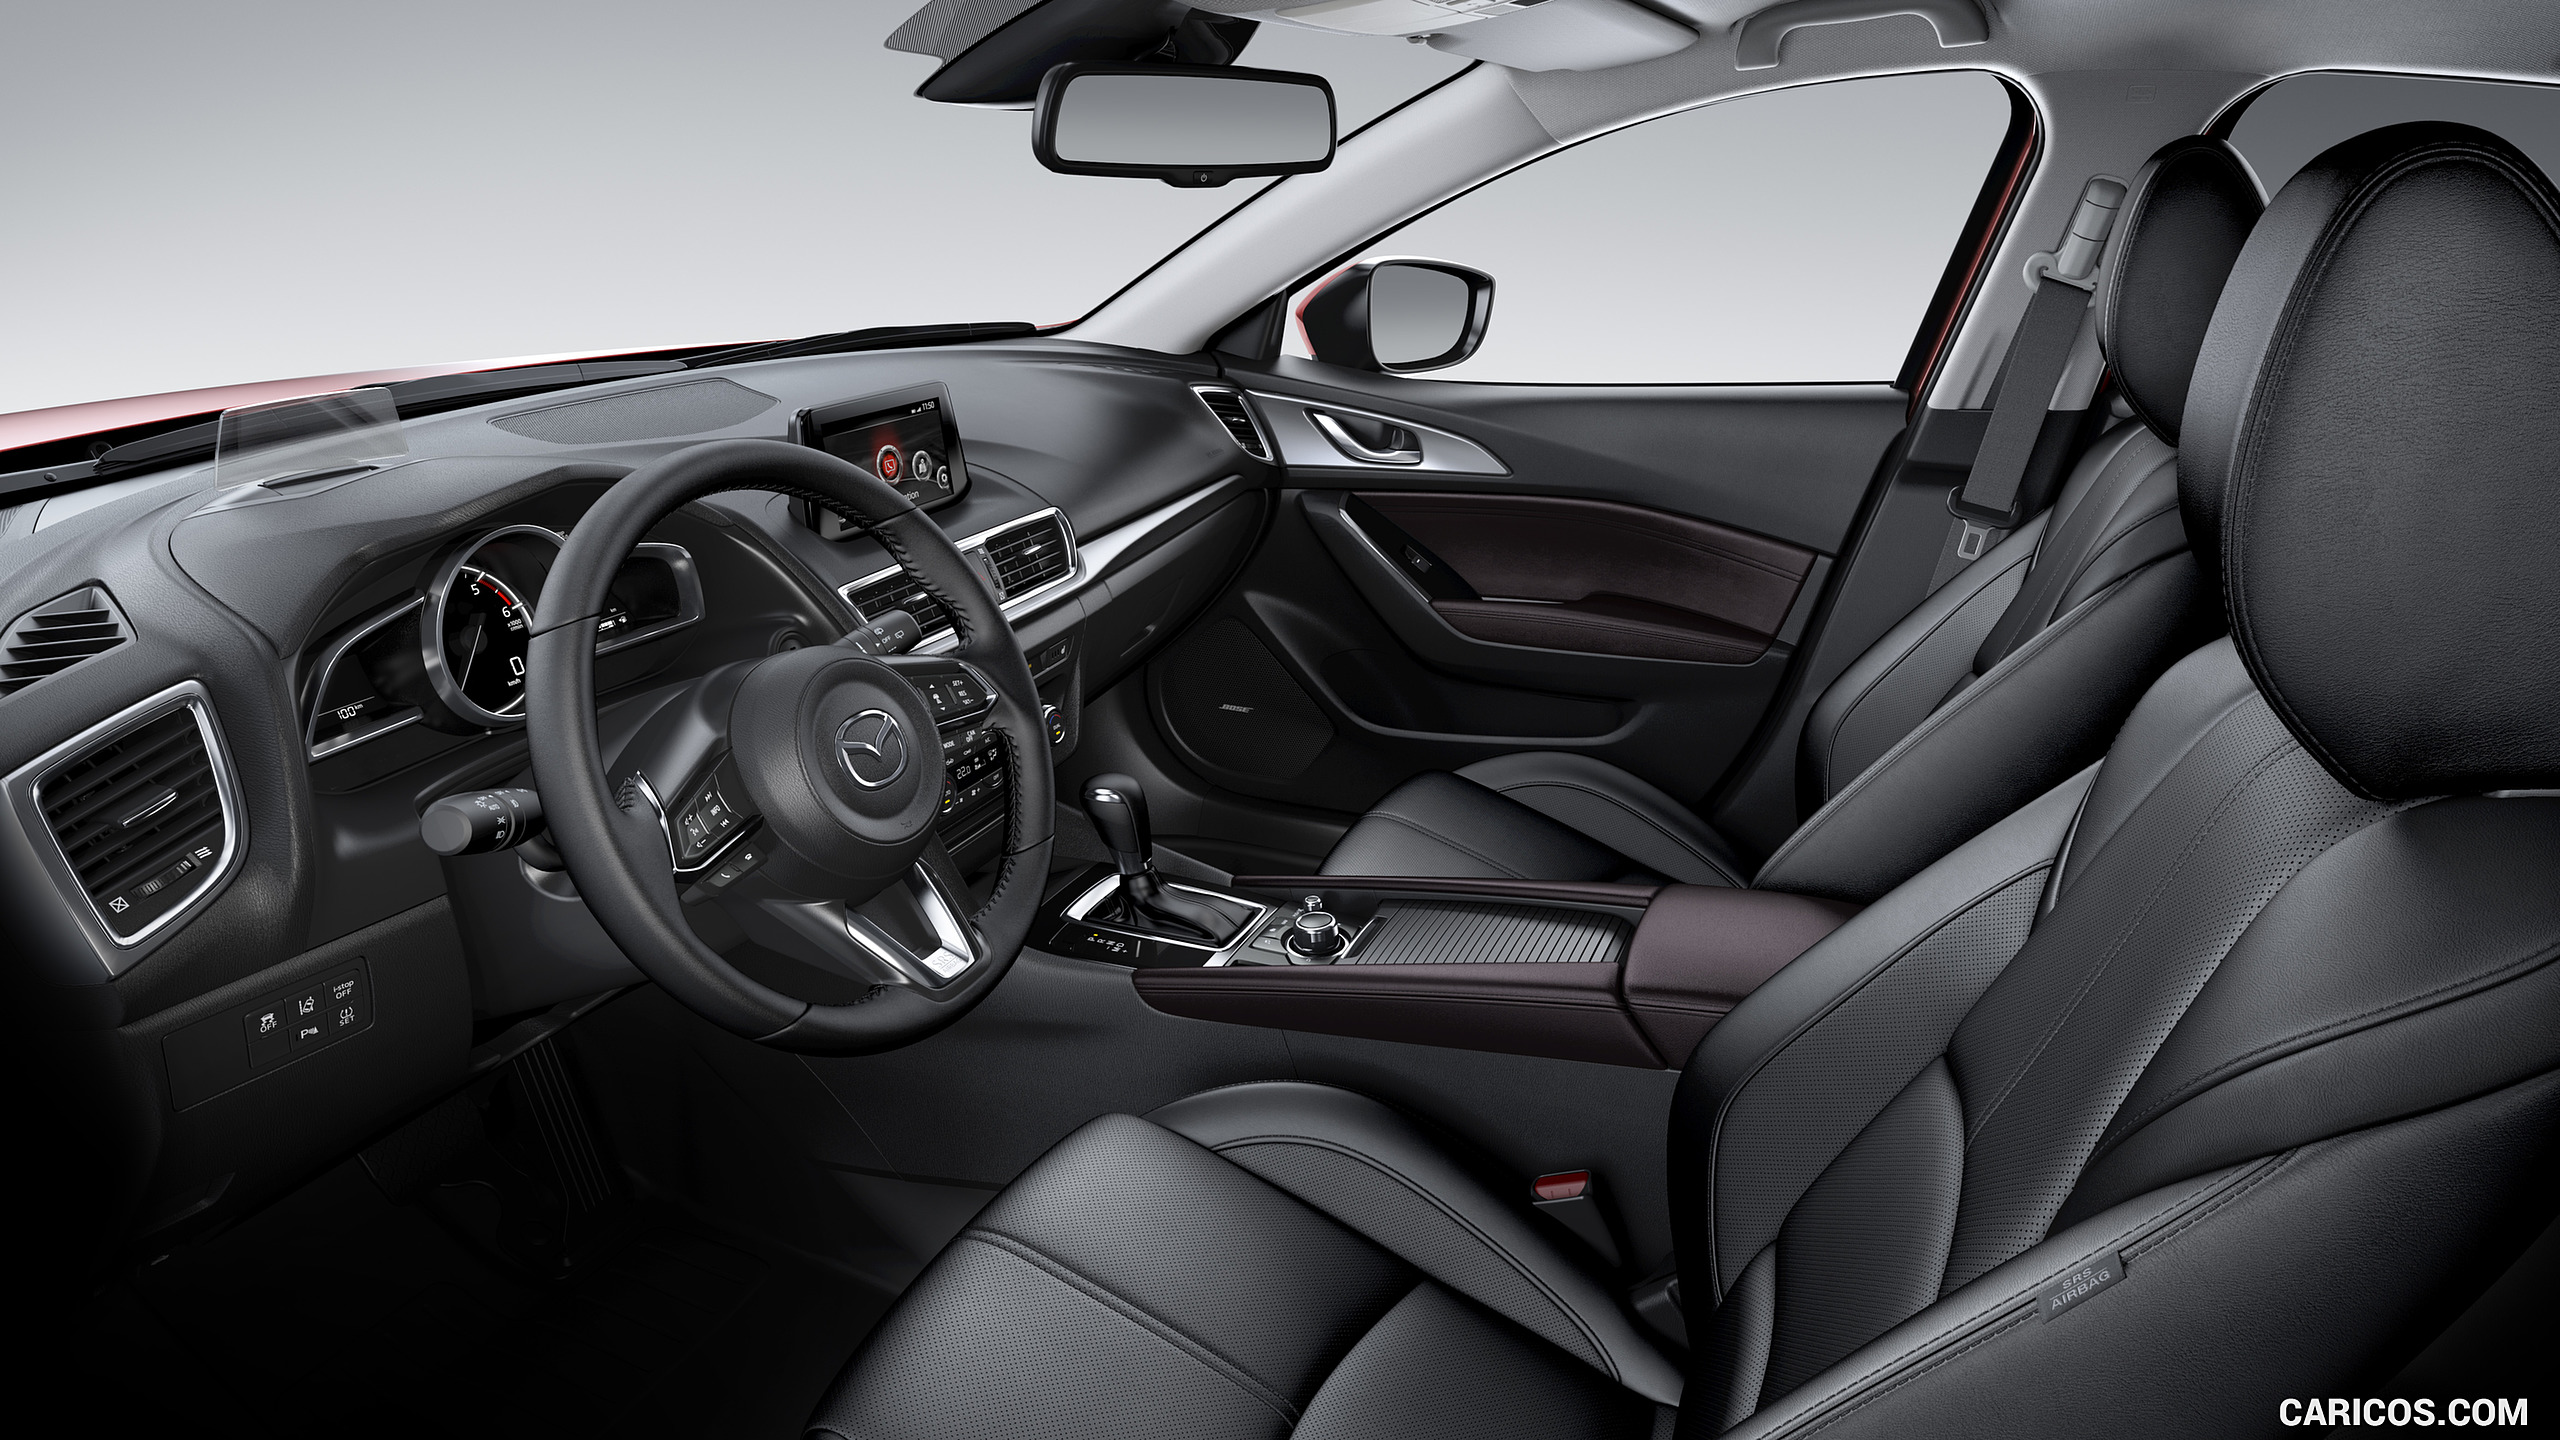 2017 Mazda 3 5-Door Hatchback - Interior, #10 of 19